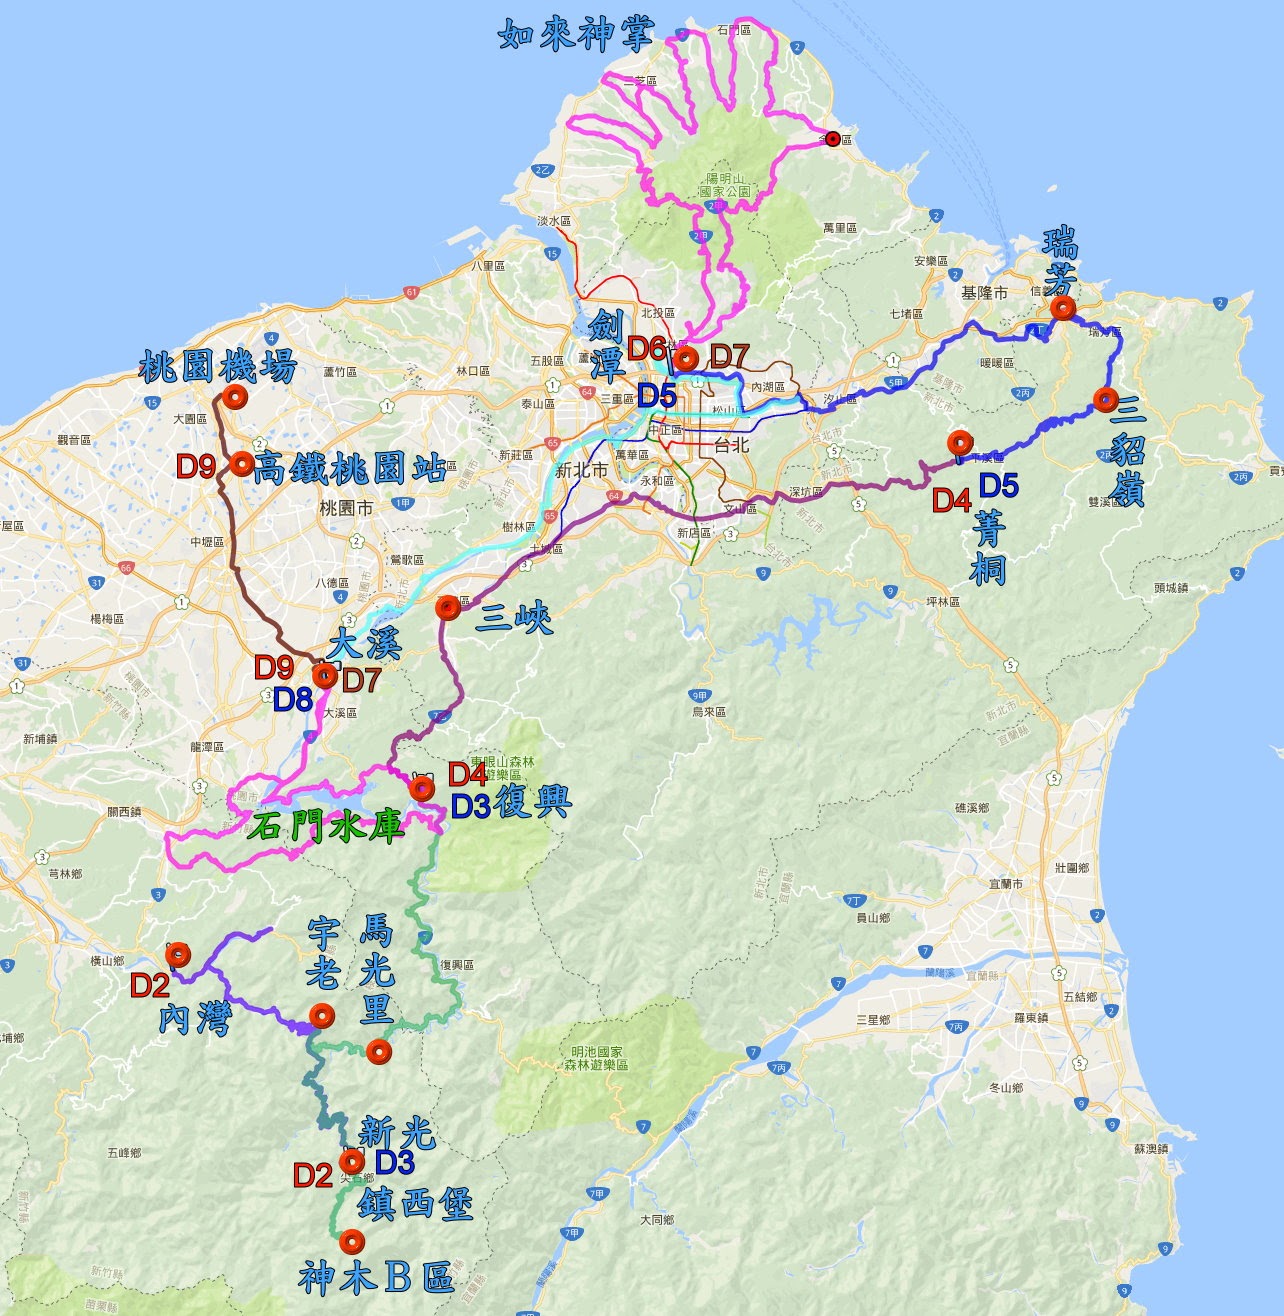 走進大自然 11 台灣 鎮西堡 如來神掌 石門水庫